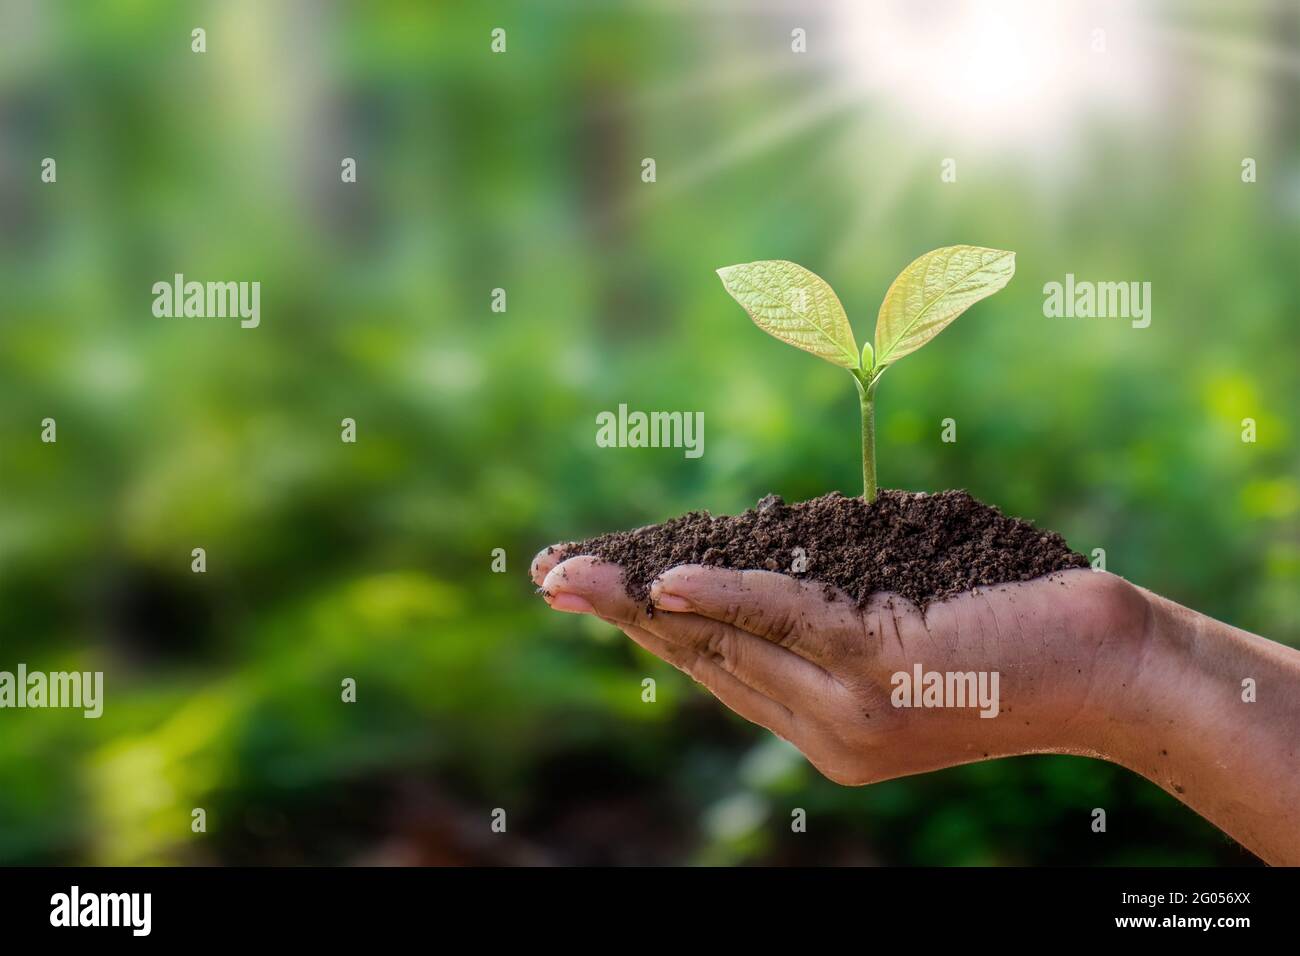 Les arbres sont plantés sur le sol entre des mains humaines avec des fonds verts naturels, le concept de croissance végétale et la protection de l'environnement. Banque D'Images